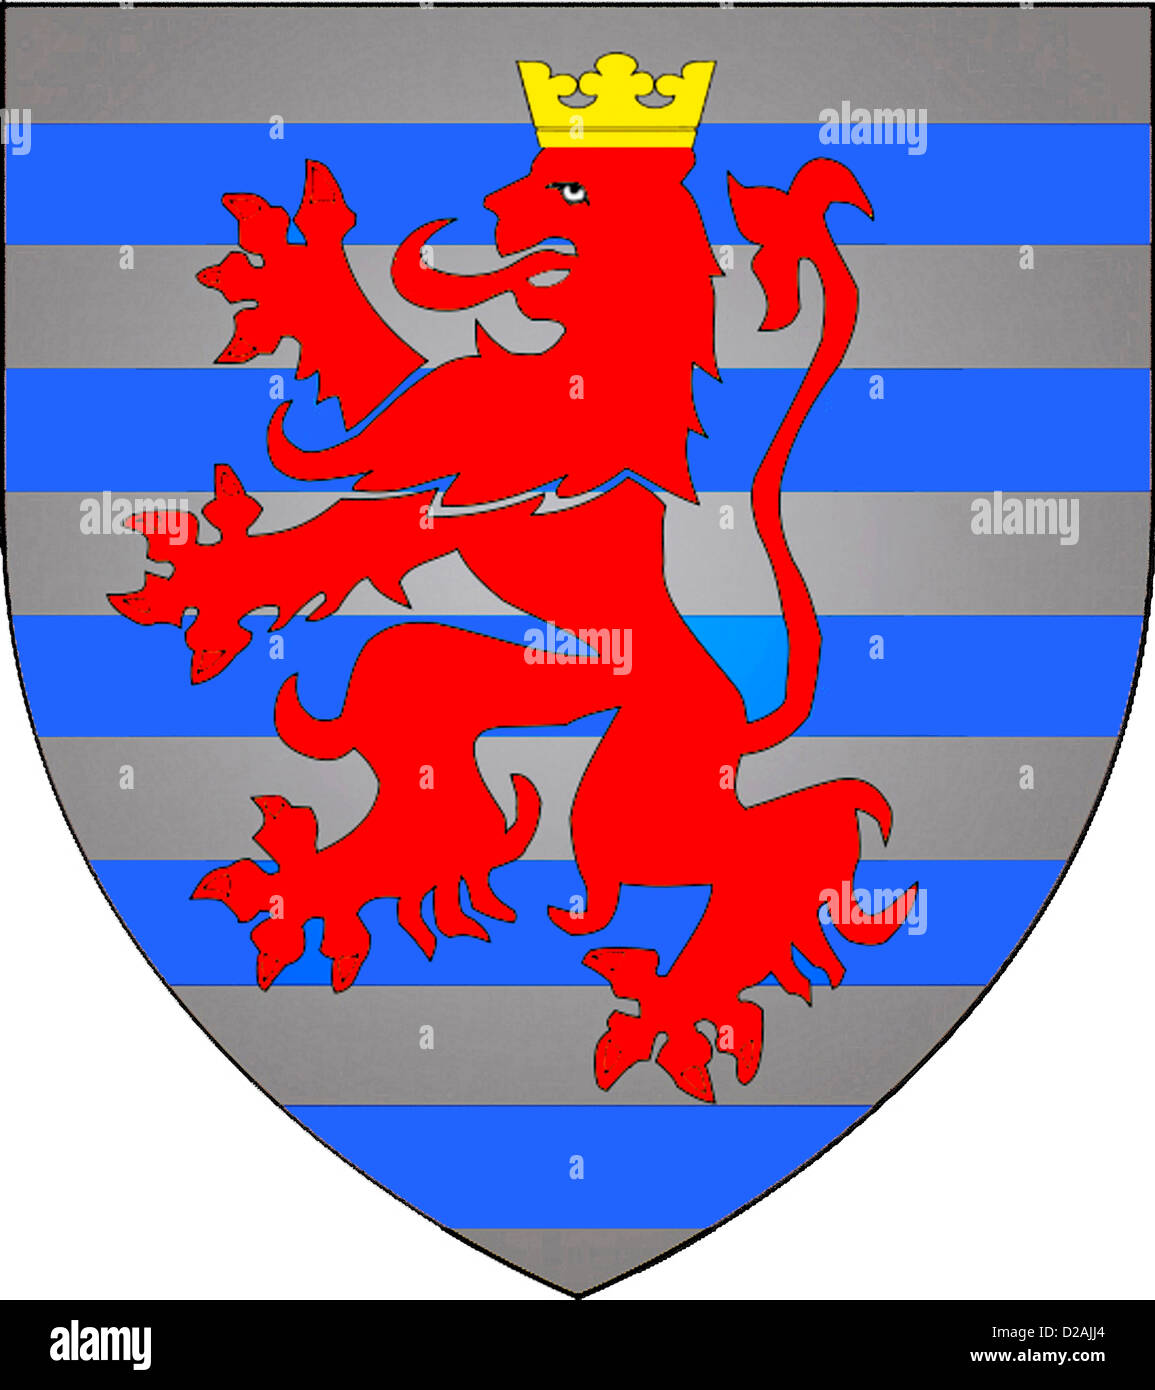 Wappen der Stadt Luxemburg - Hauptstadt des Großherzogtums Luxemburg. Stockfoto